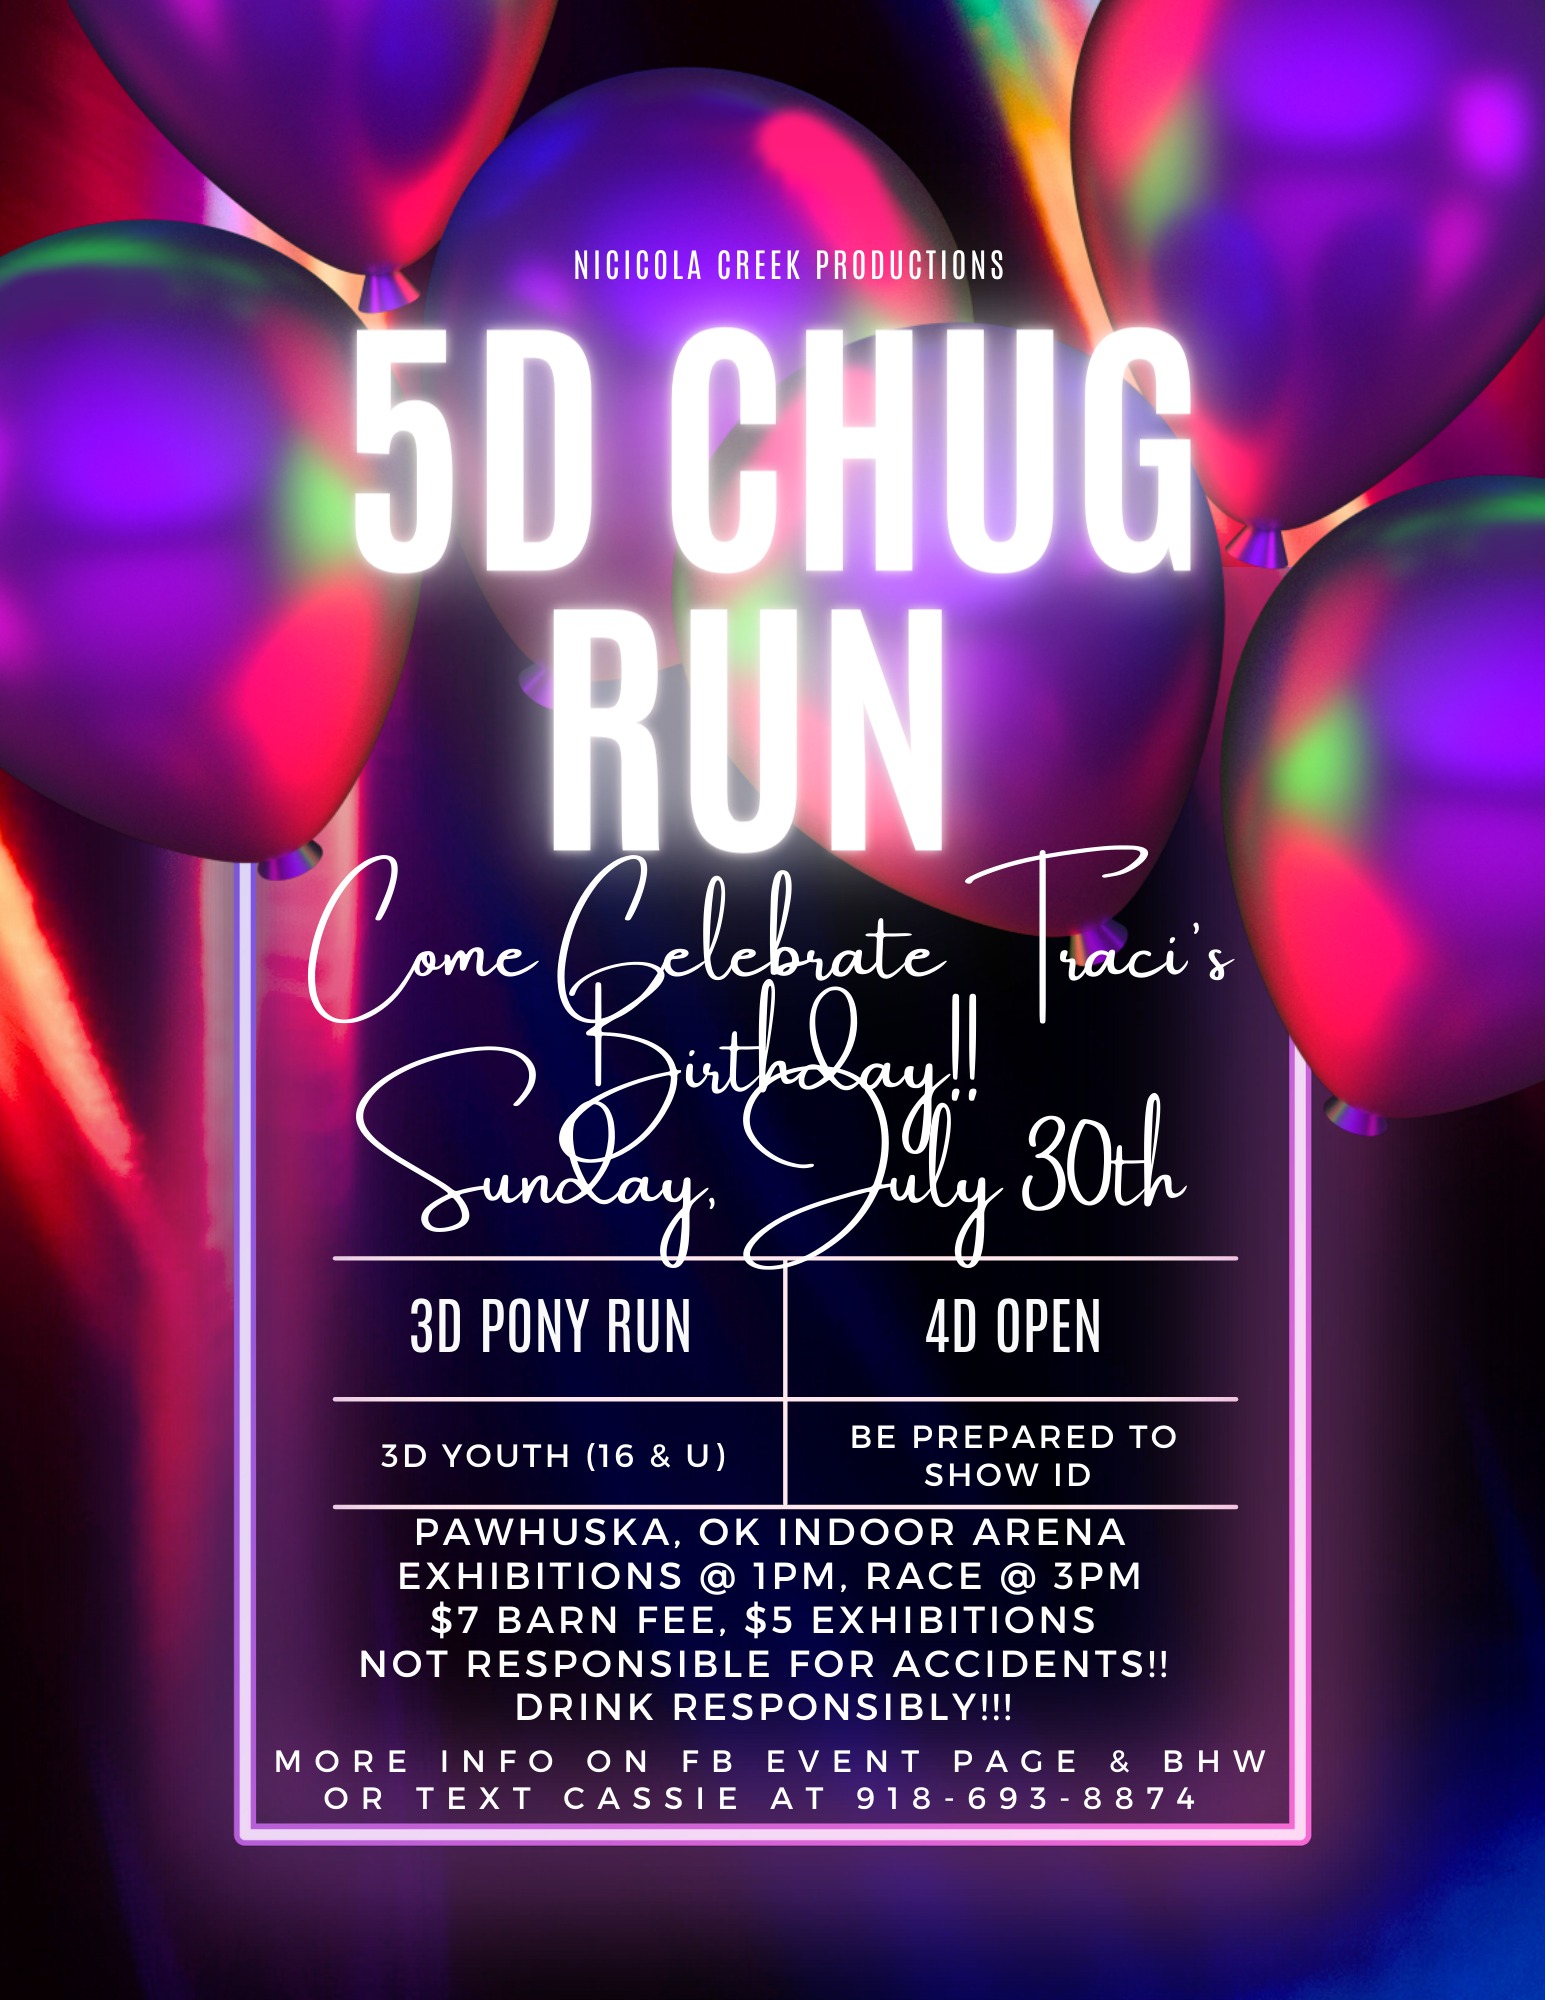 5D Chug Run